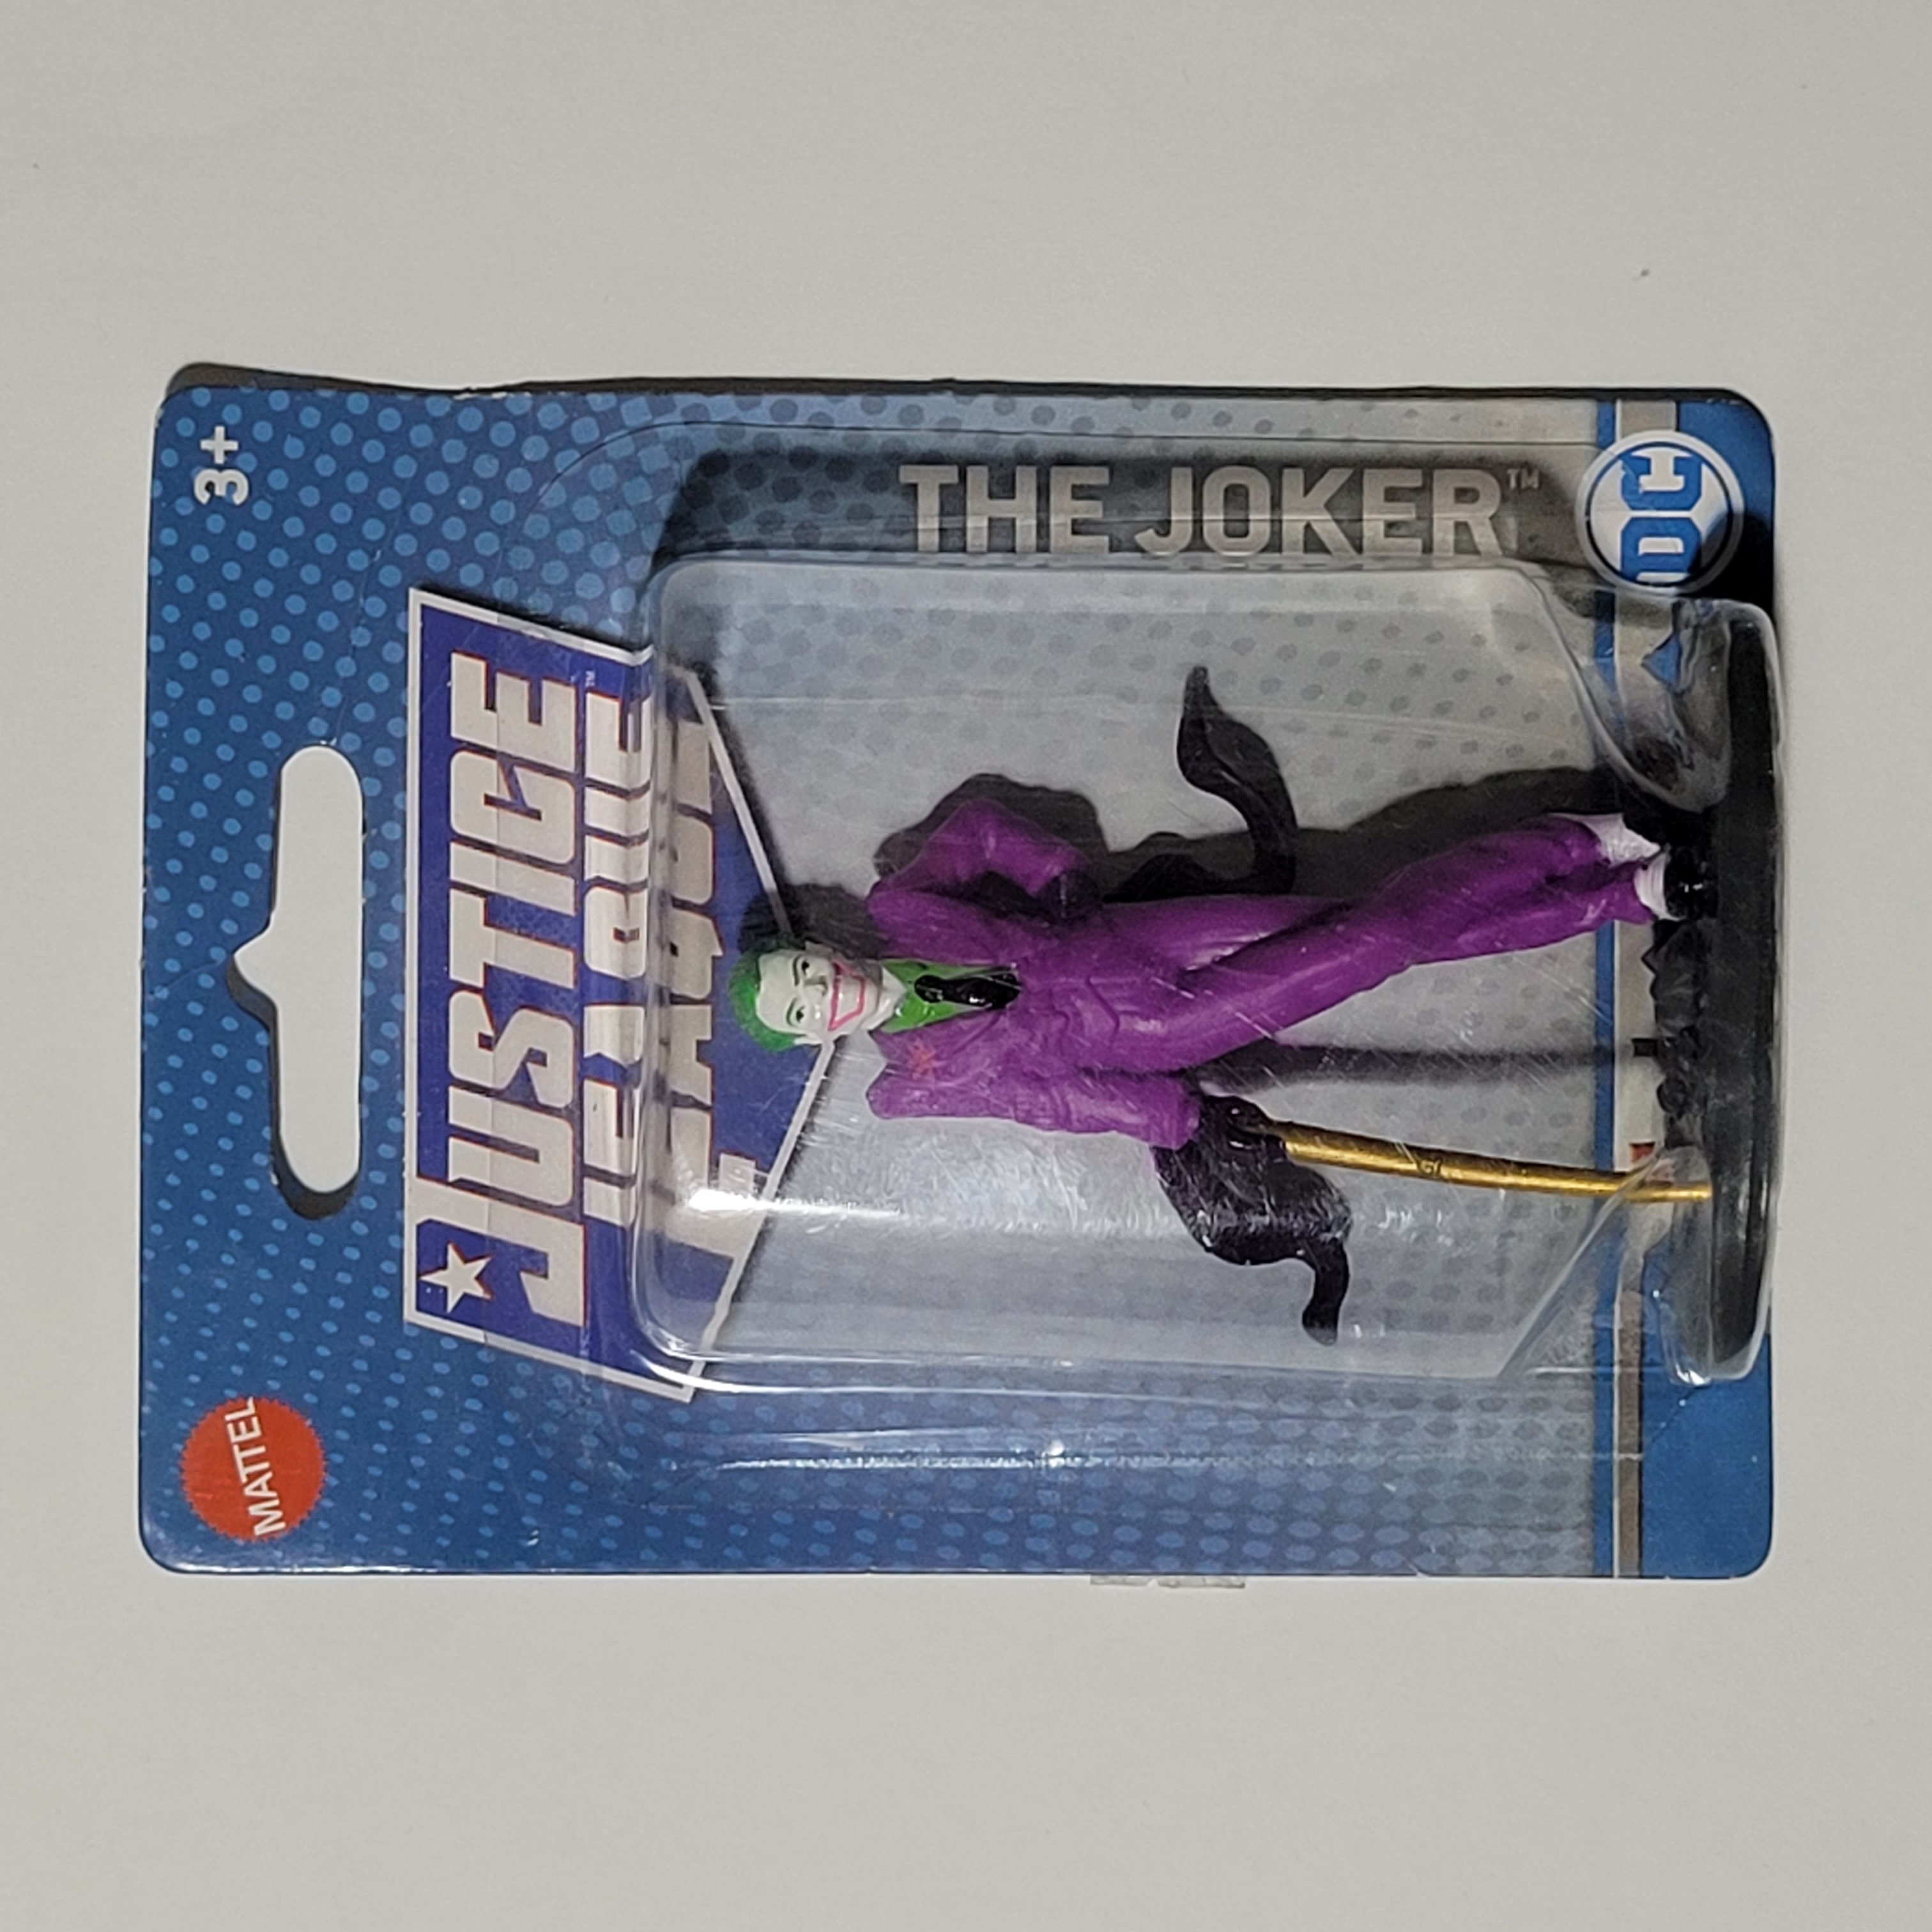 Justice League Lisanslı The Joker Figür (Sıfır)